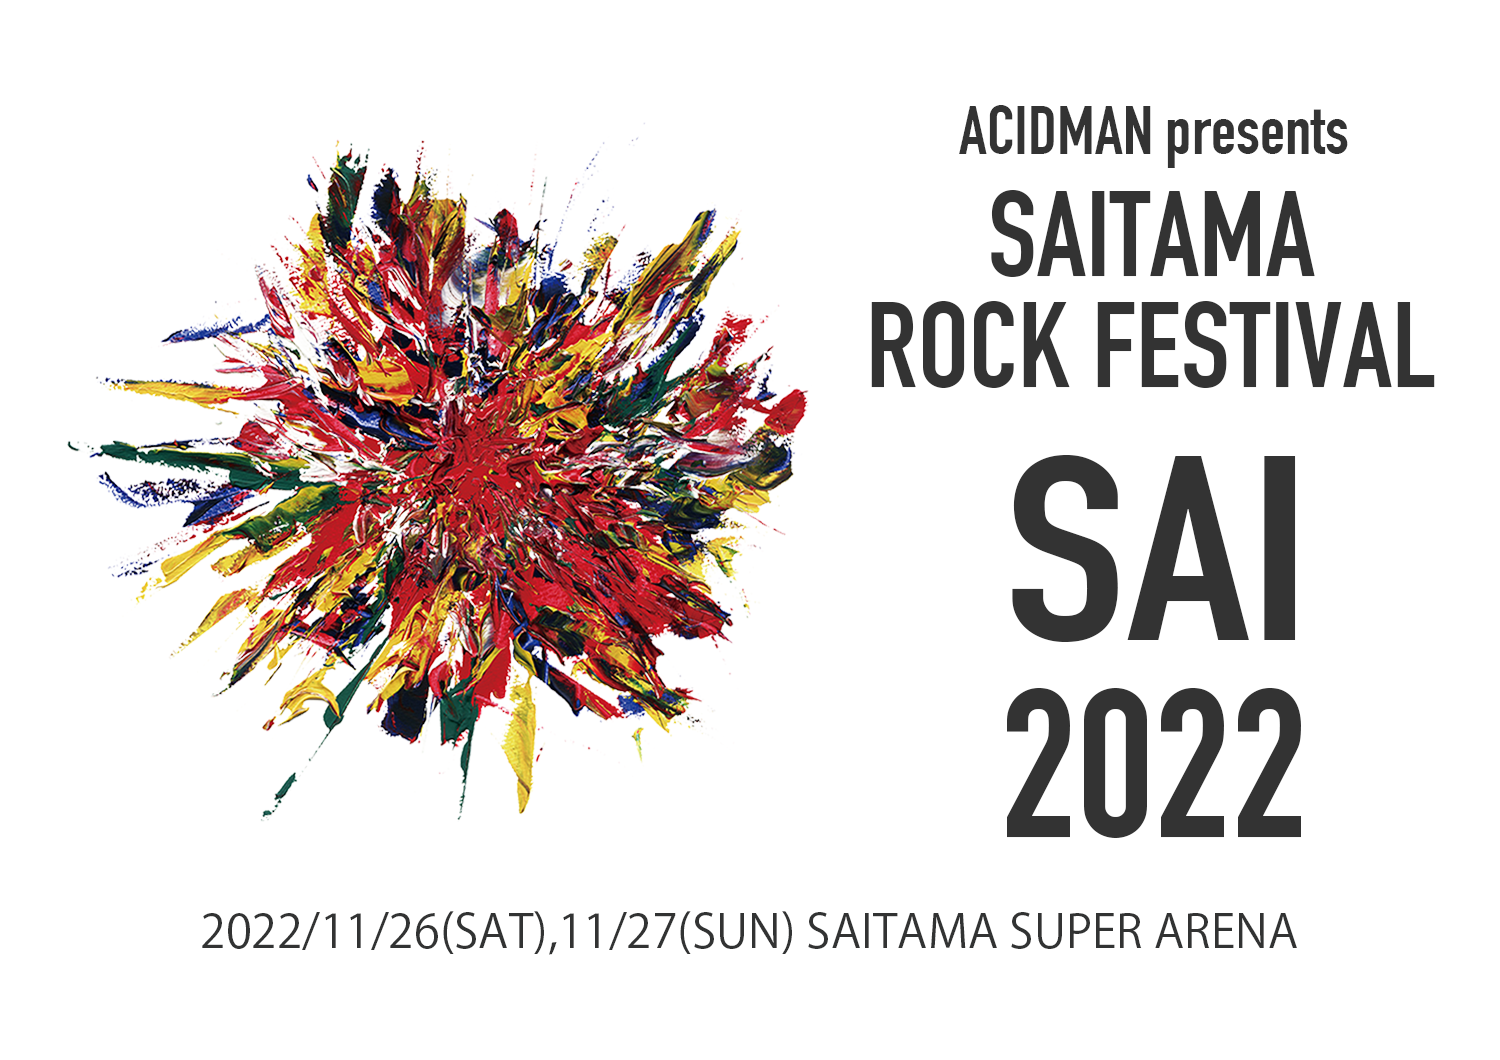 SAITAMA ROCK FESTIVAL “SAI” 2022 | MAN WITH A MISSION